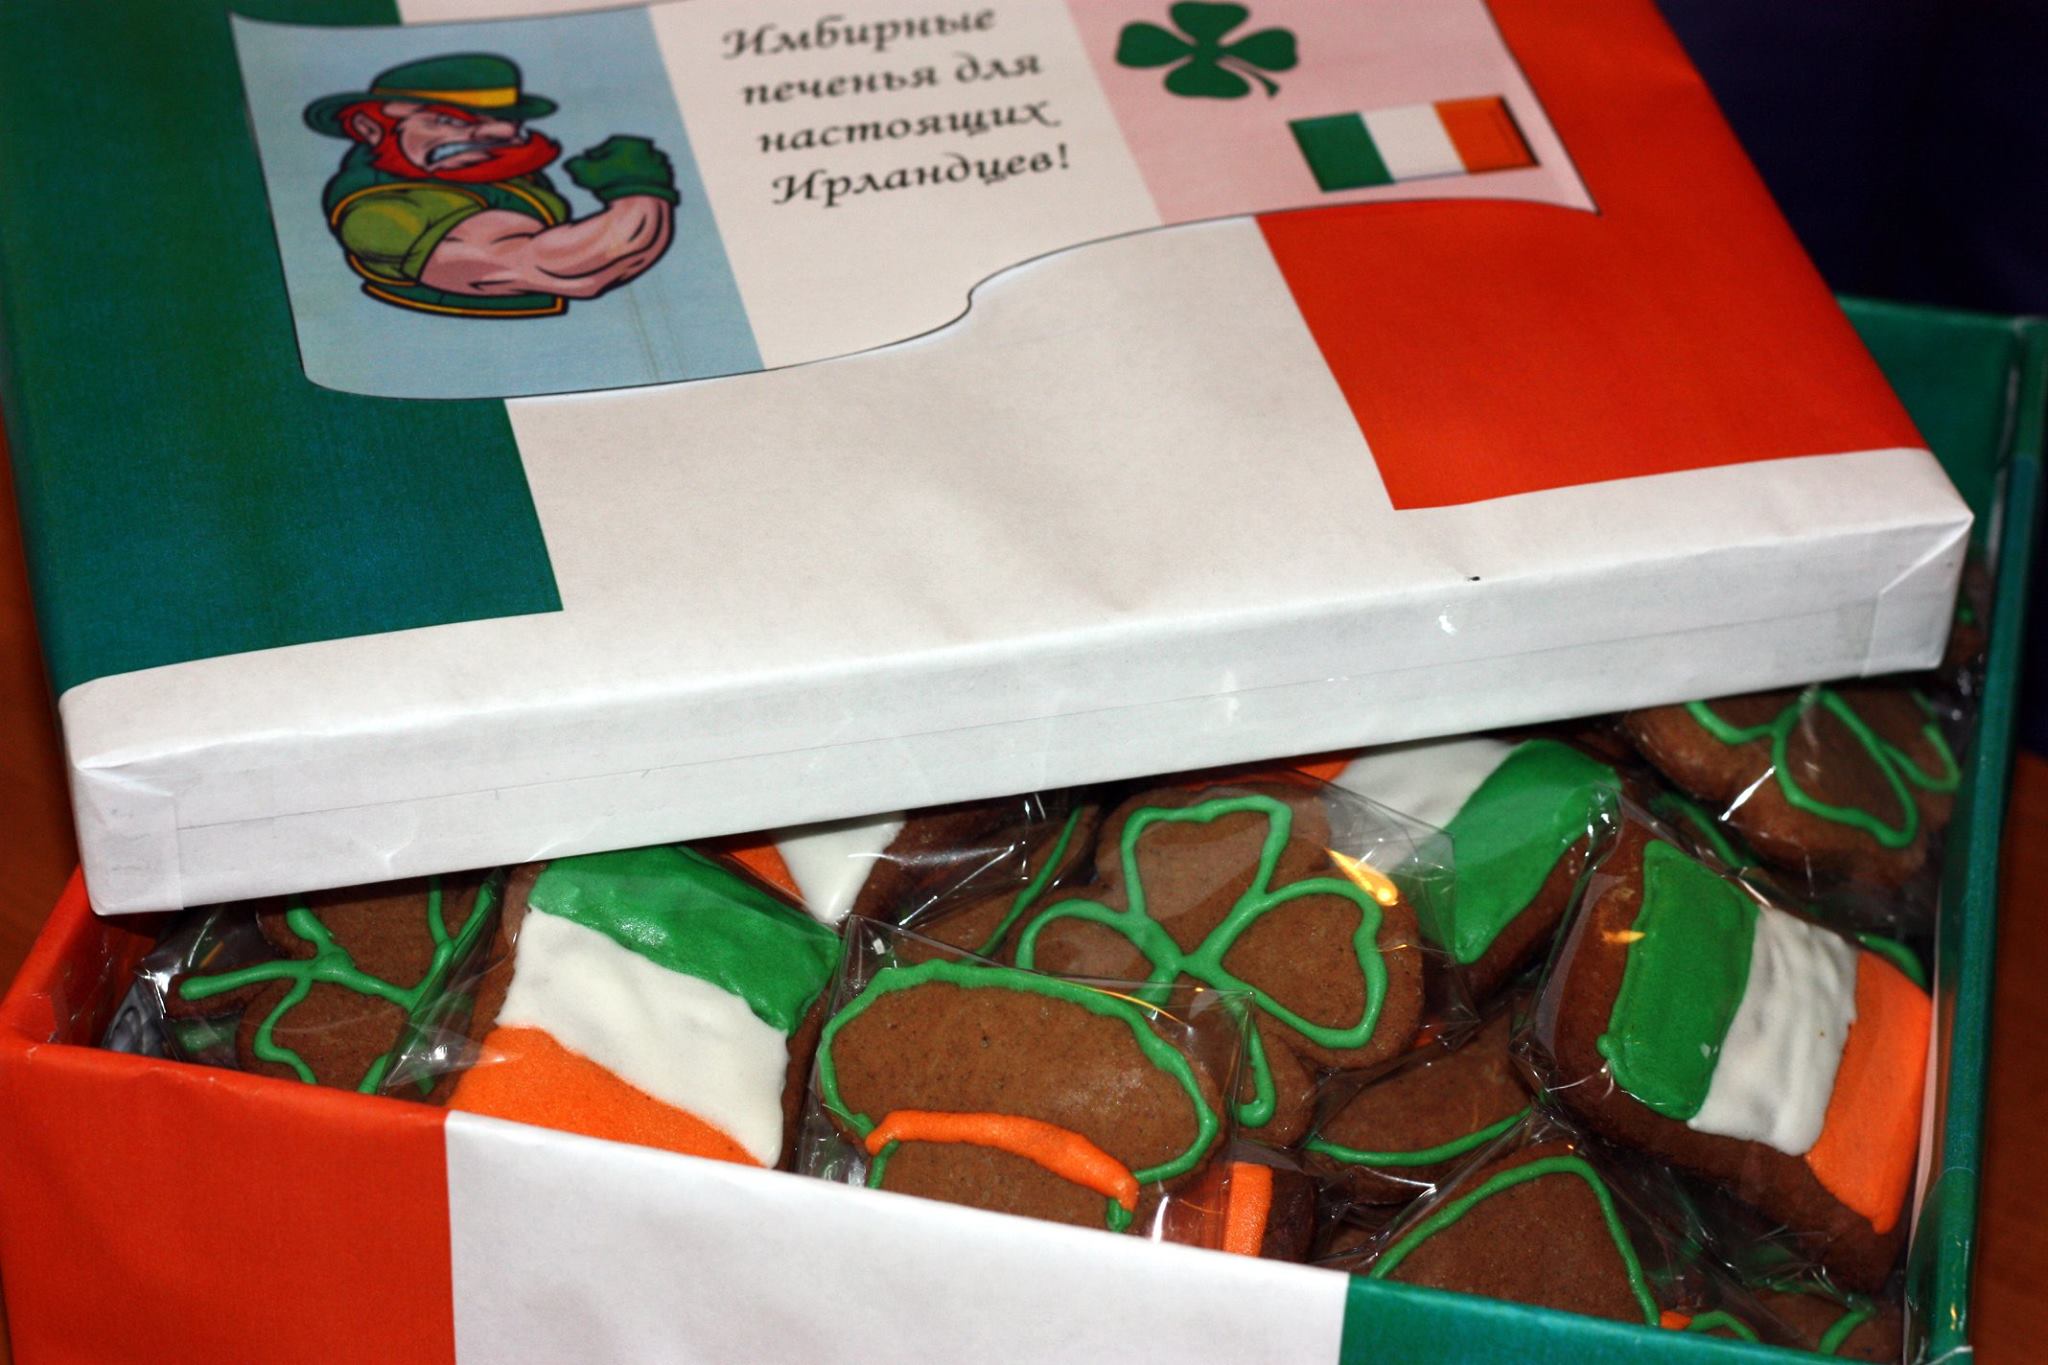 Ирландские печеньки, испеченные девушками Команды